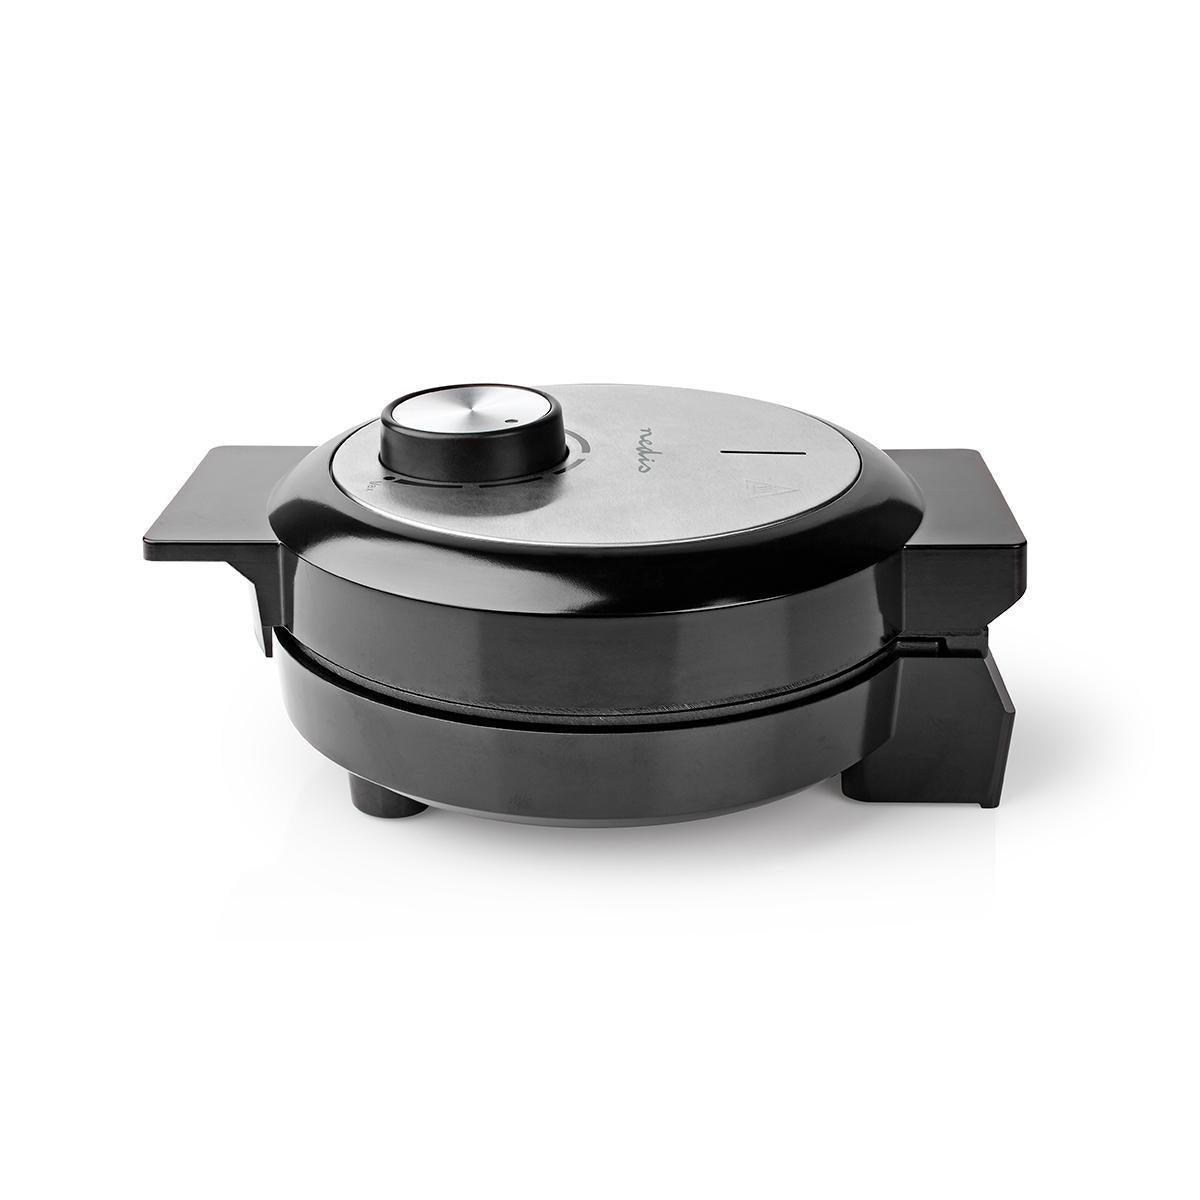 Waffeleisen | 5 Heart shaped waffles | 19 cm | 1000 W | Automatischer Temperaturkontrolle | Aluminium / Kunststoff